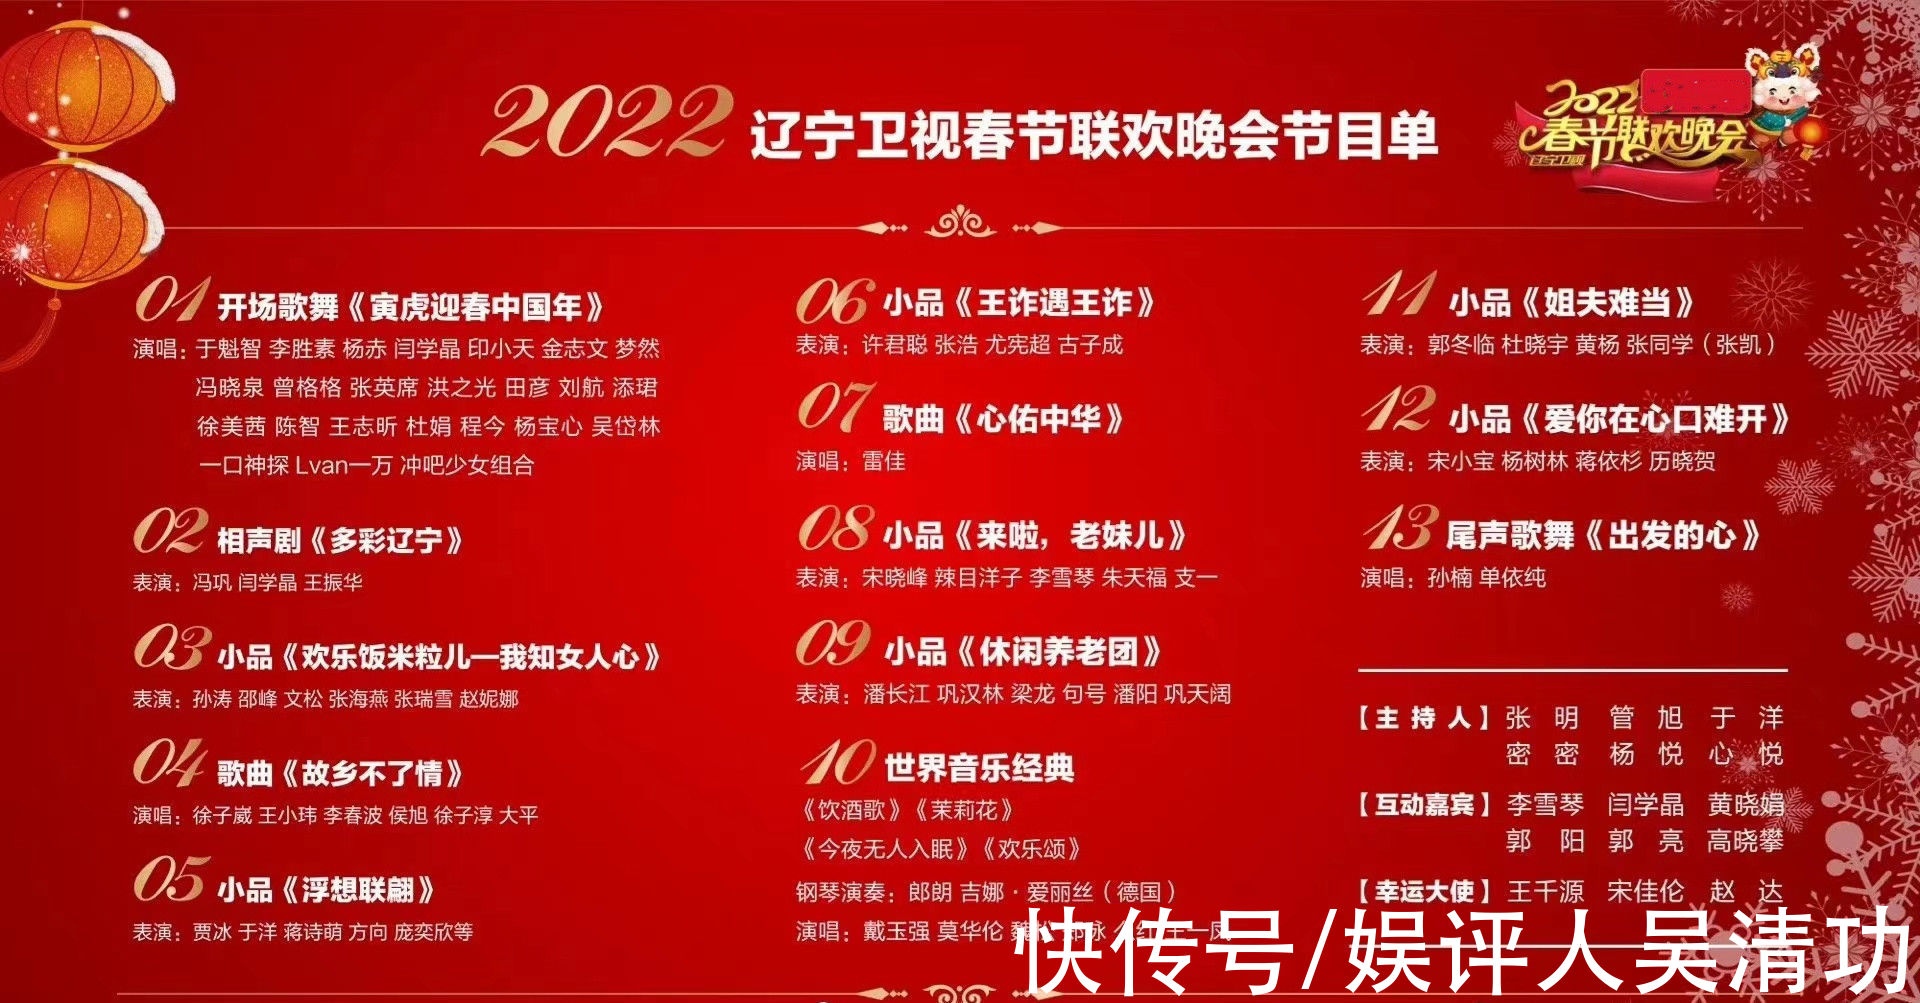 辽宁卫视的春节联欢晚会风格很明显,一共13个节目,其中有8个是语言类